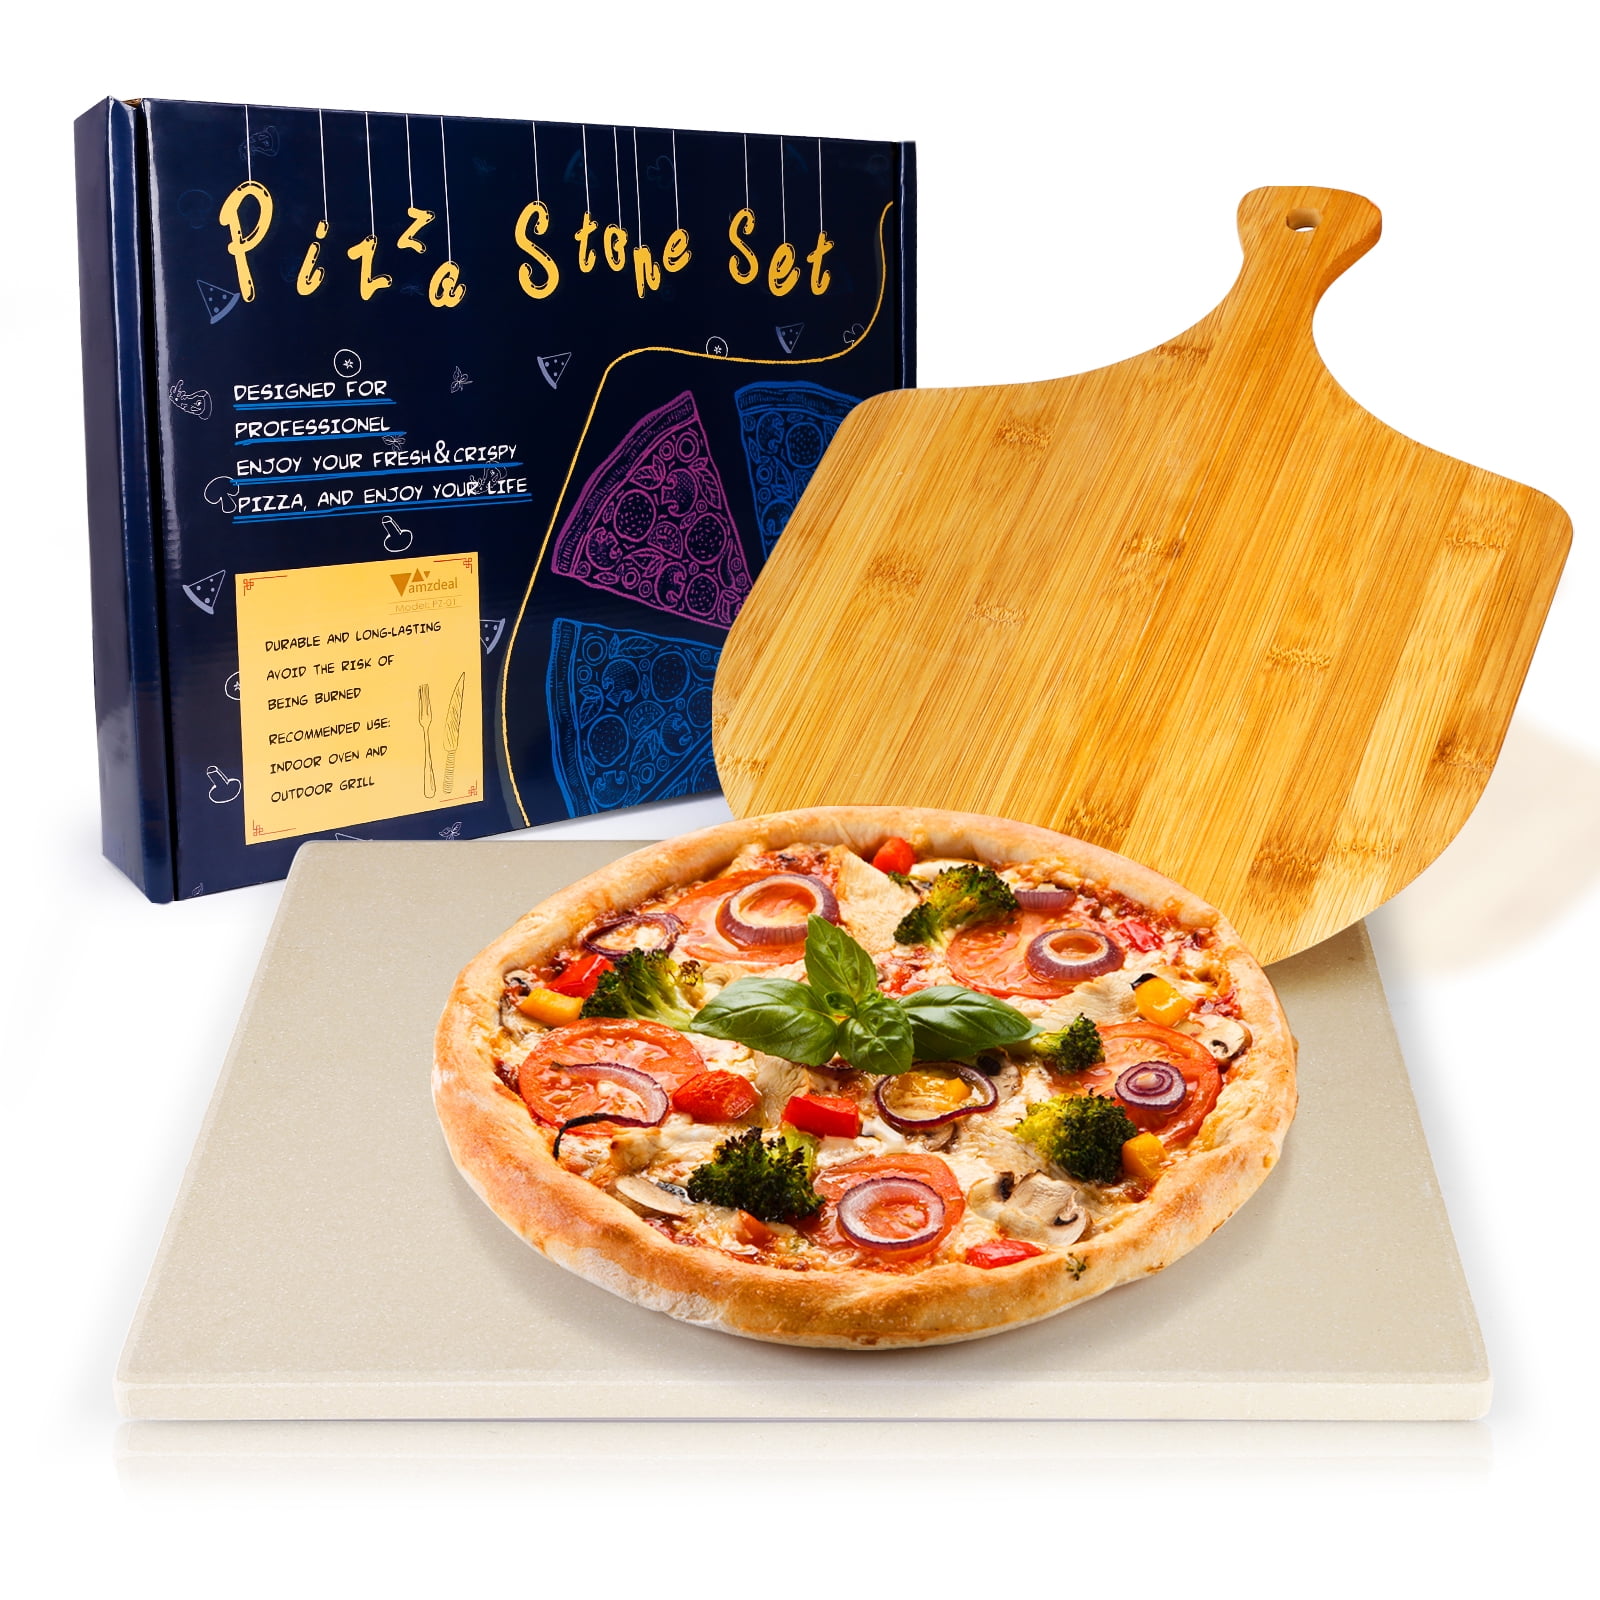 Deluxe Pizza Stone Set Cordierite Bread Baking Stone with Pizza Shovel and Recipe Book 